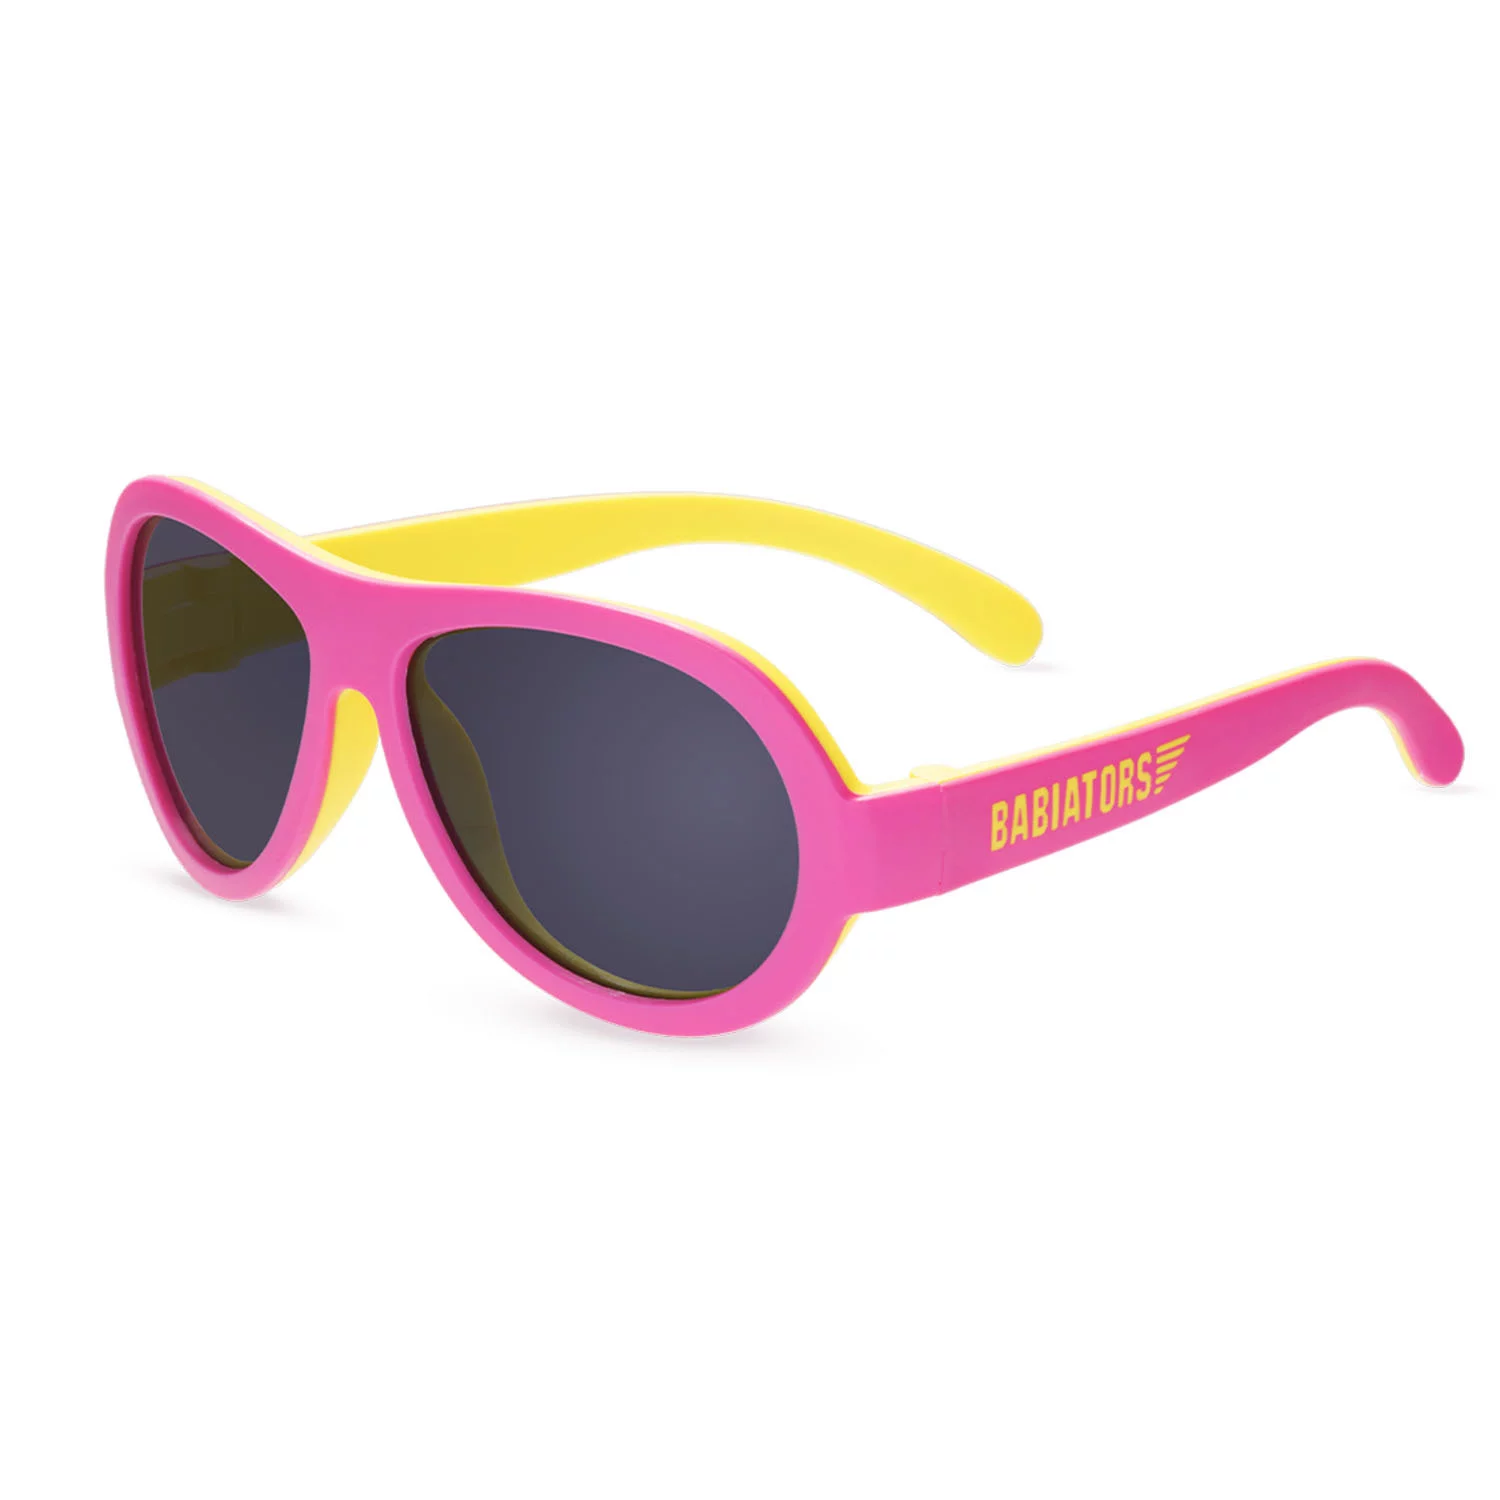 Päikeseprillid Babiators Aviator 2 värvi Pink Lemonade, 0-2a.